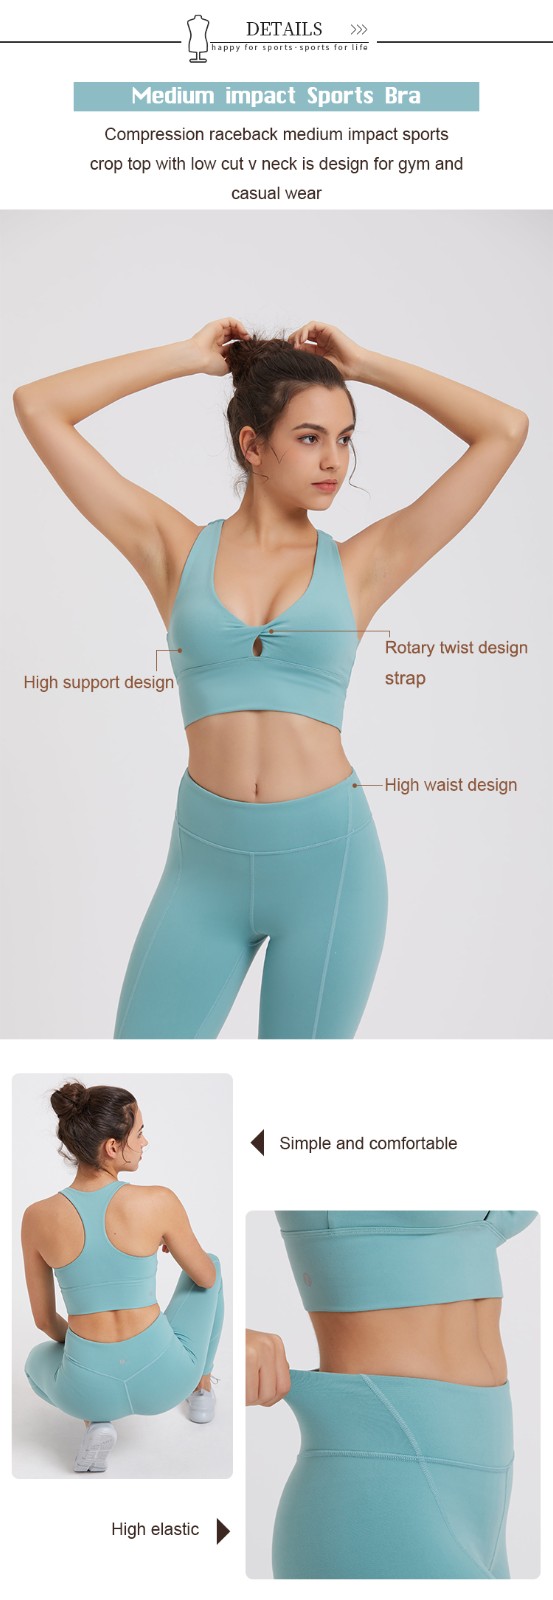 INGOR yoga leggings outfit marketing for sport-3